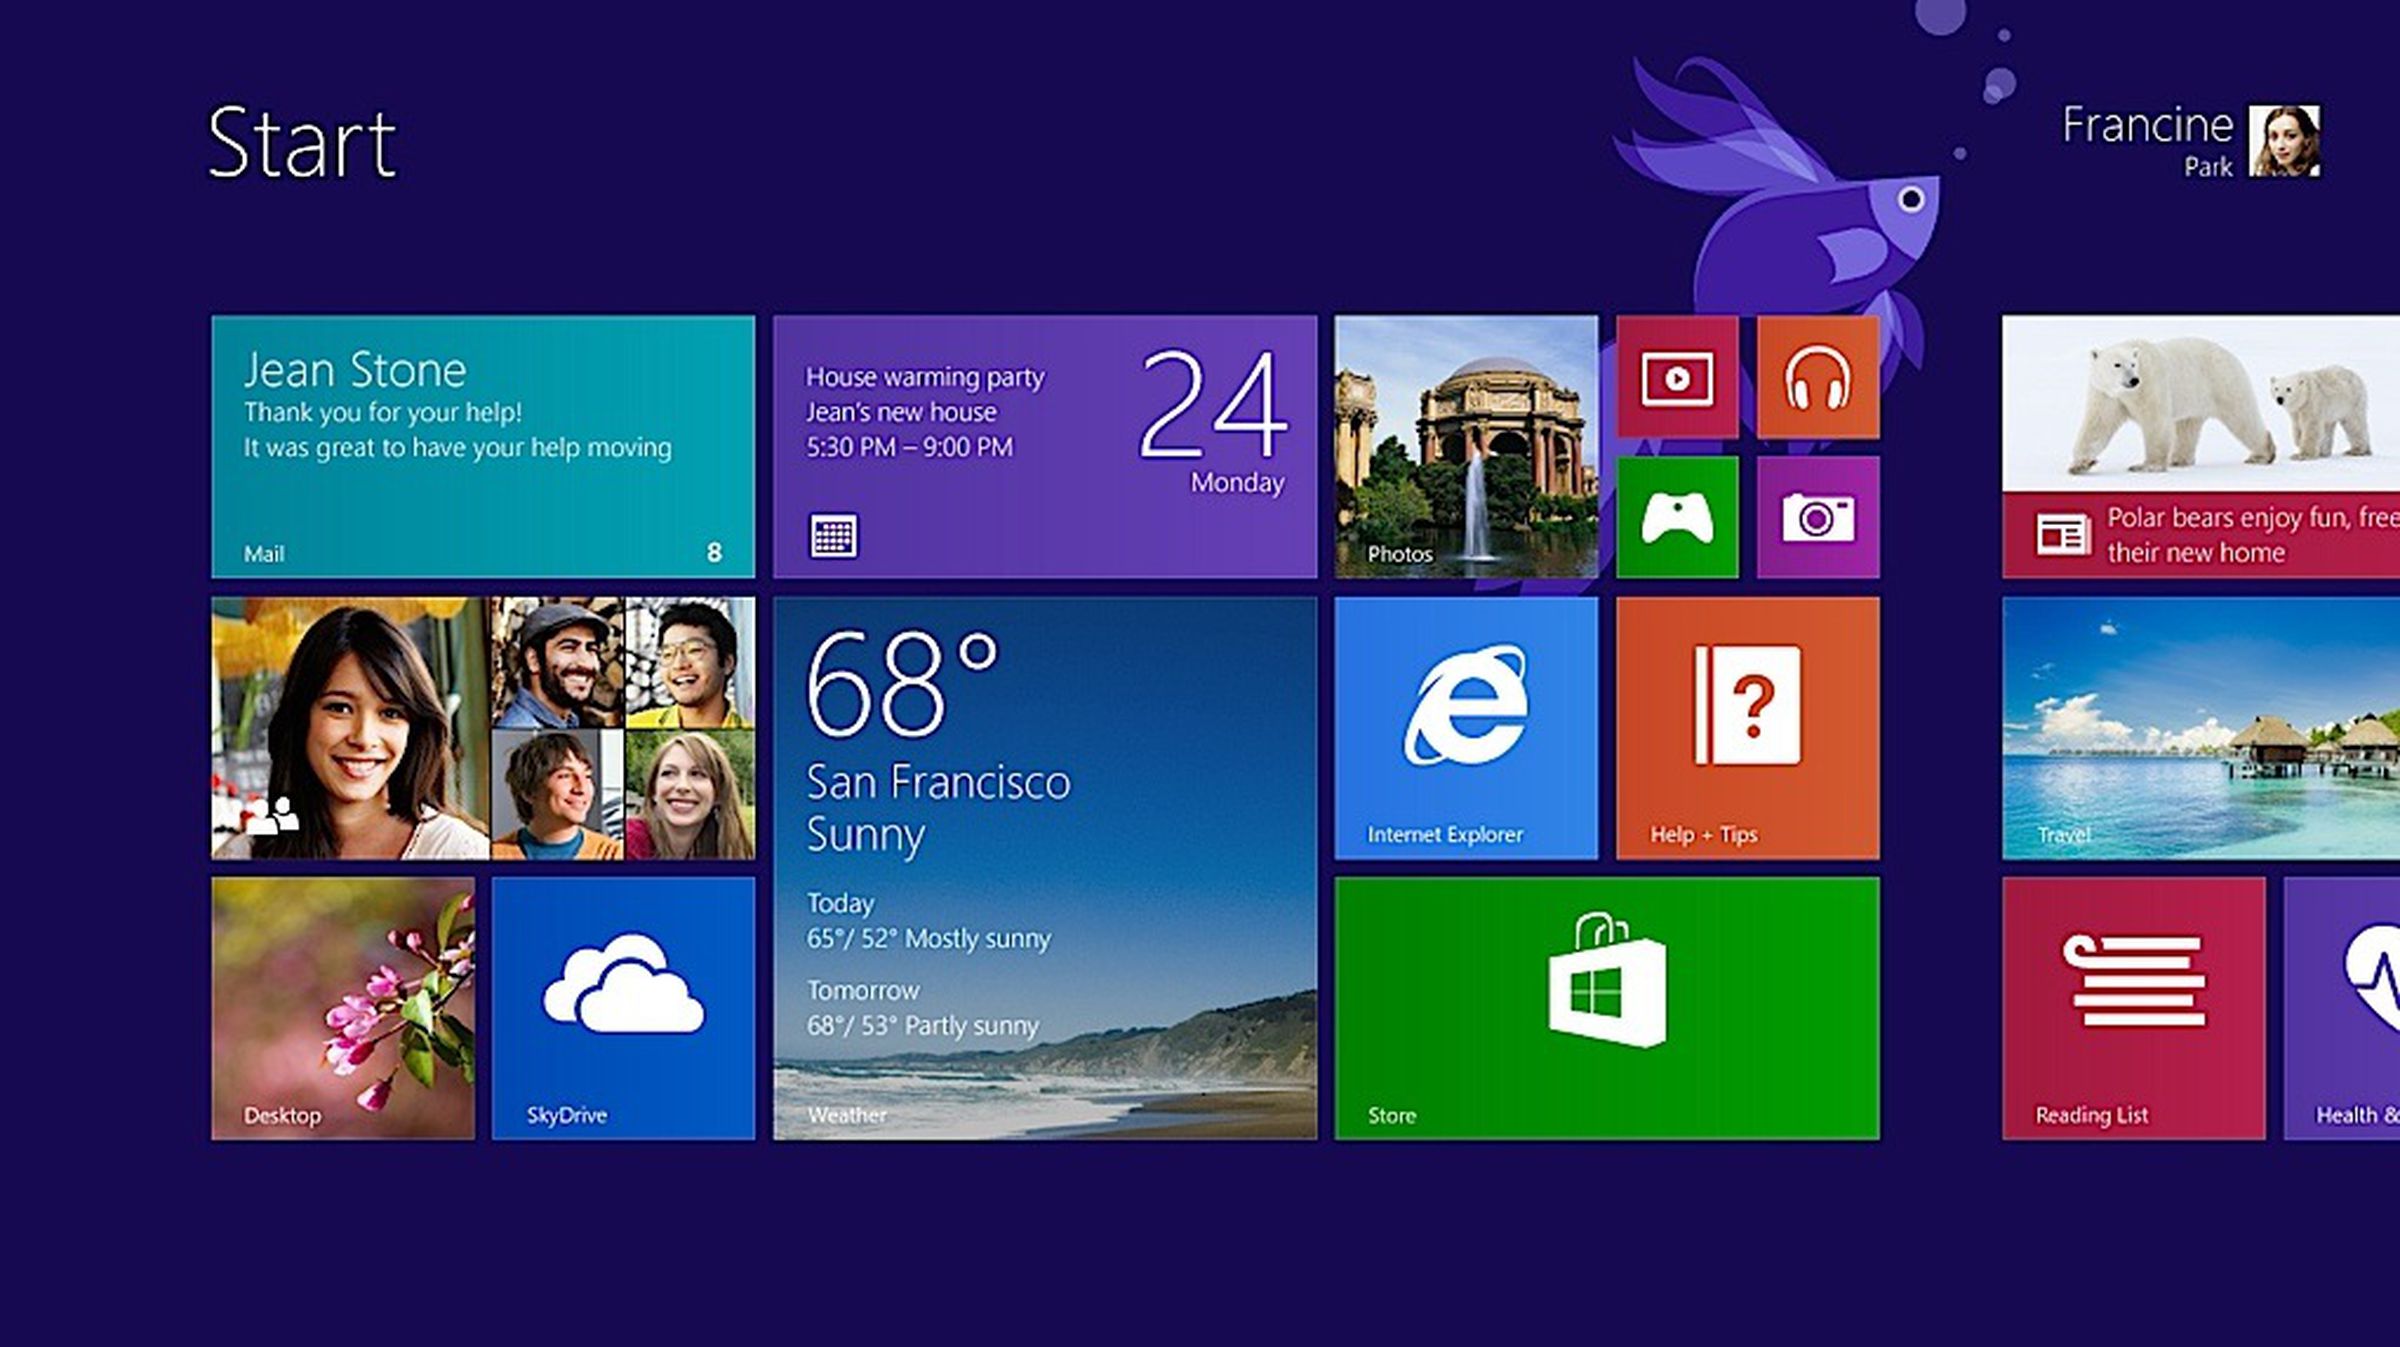 Windows 8.1 Preview screenshots